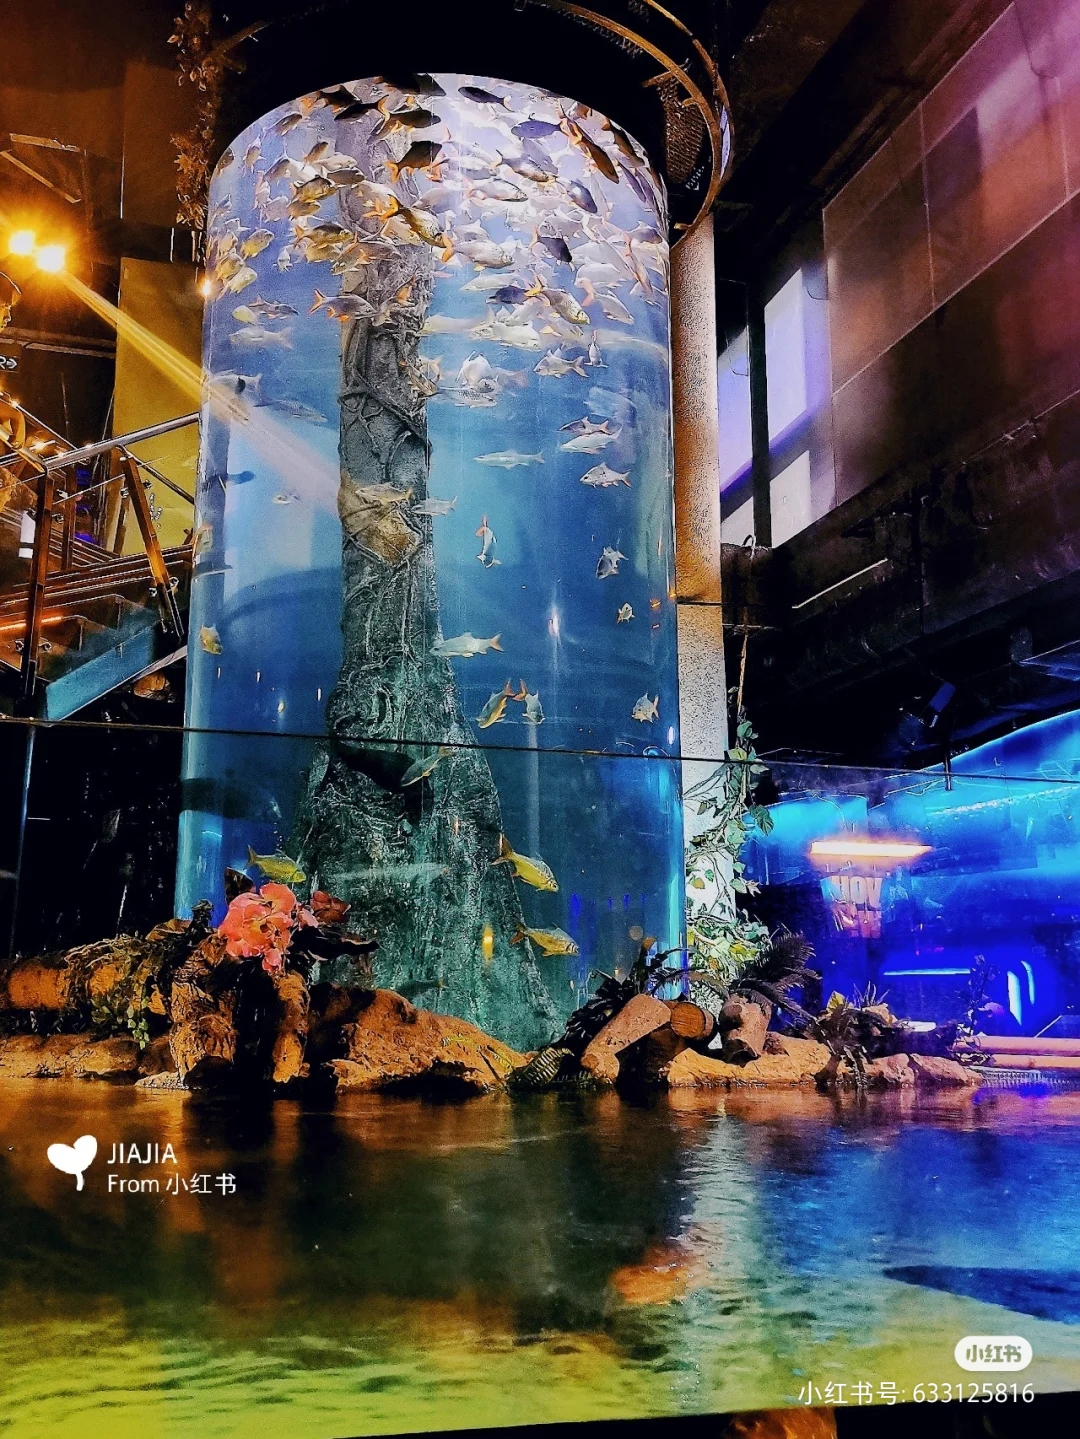 Aquarium aus Plexiglas